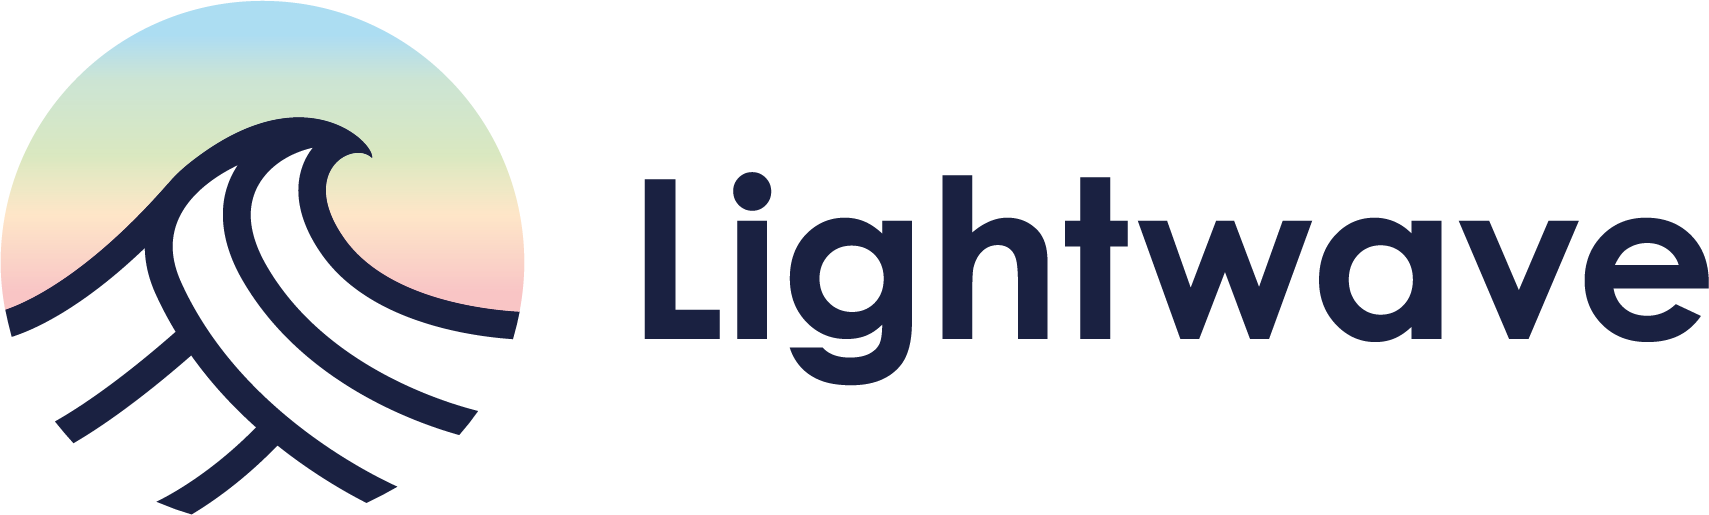 lightwave_logo_klein_03